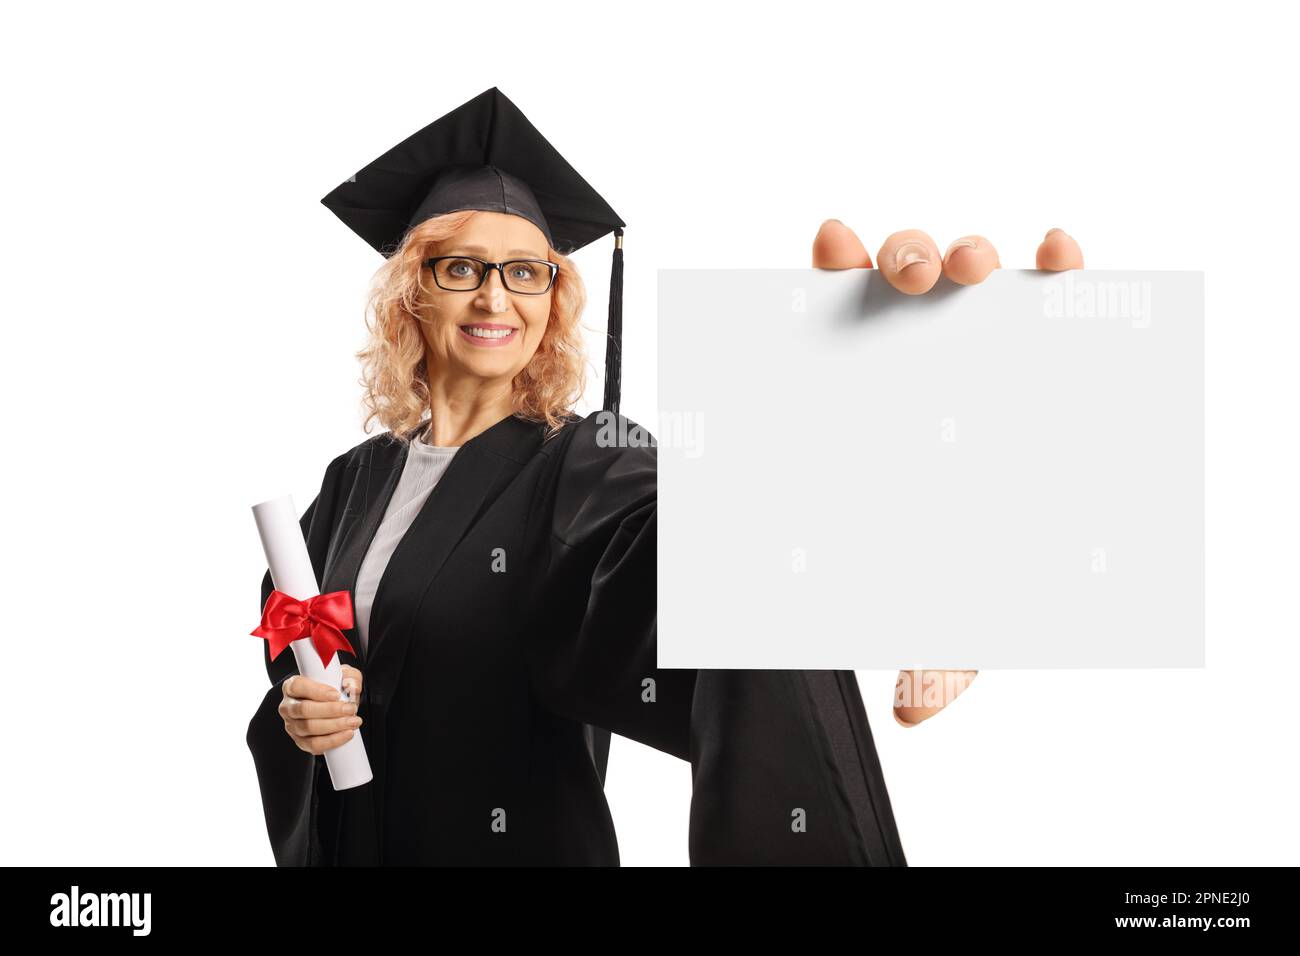 Reife Frau in einem Abschlusskleid mit einem Diplom und einer unbeschrifteten Karte isoliert auf weißem Hintergrund Stockfoto